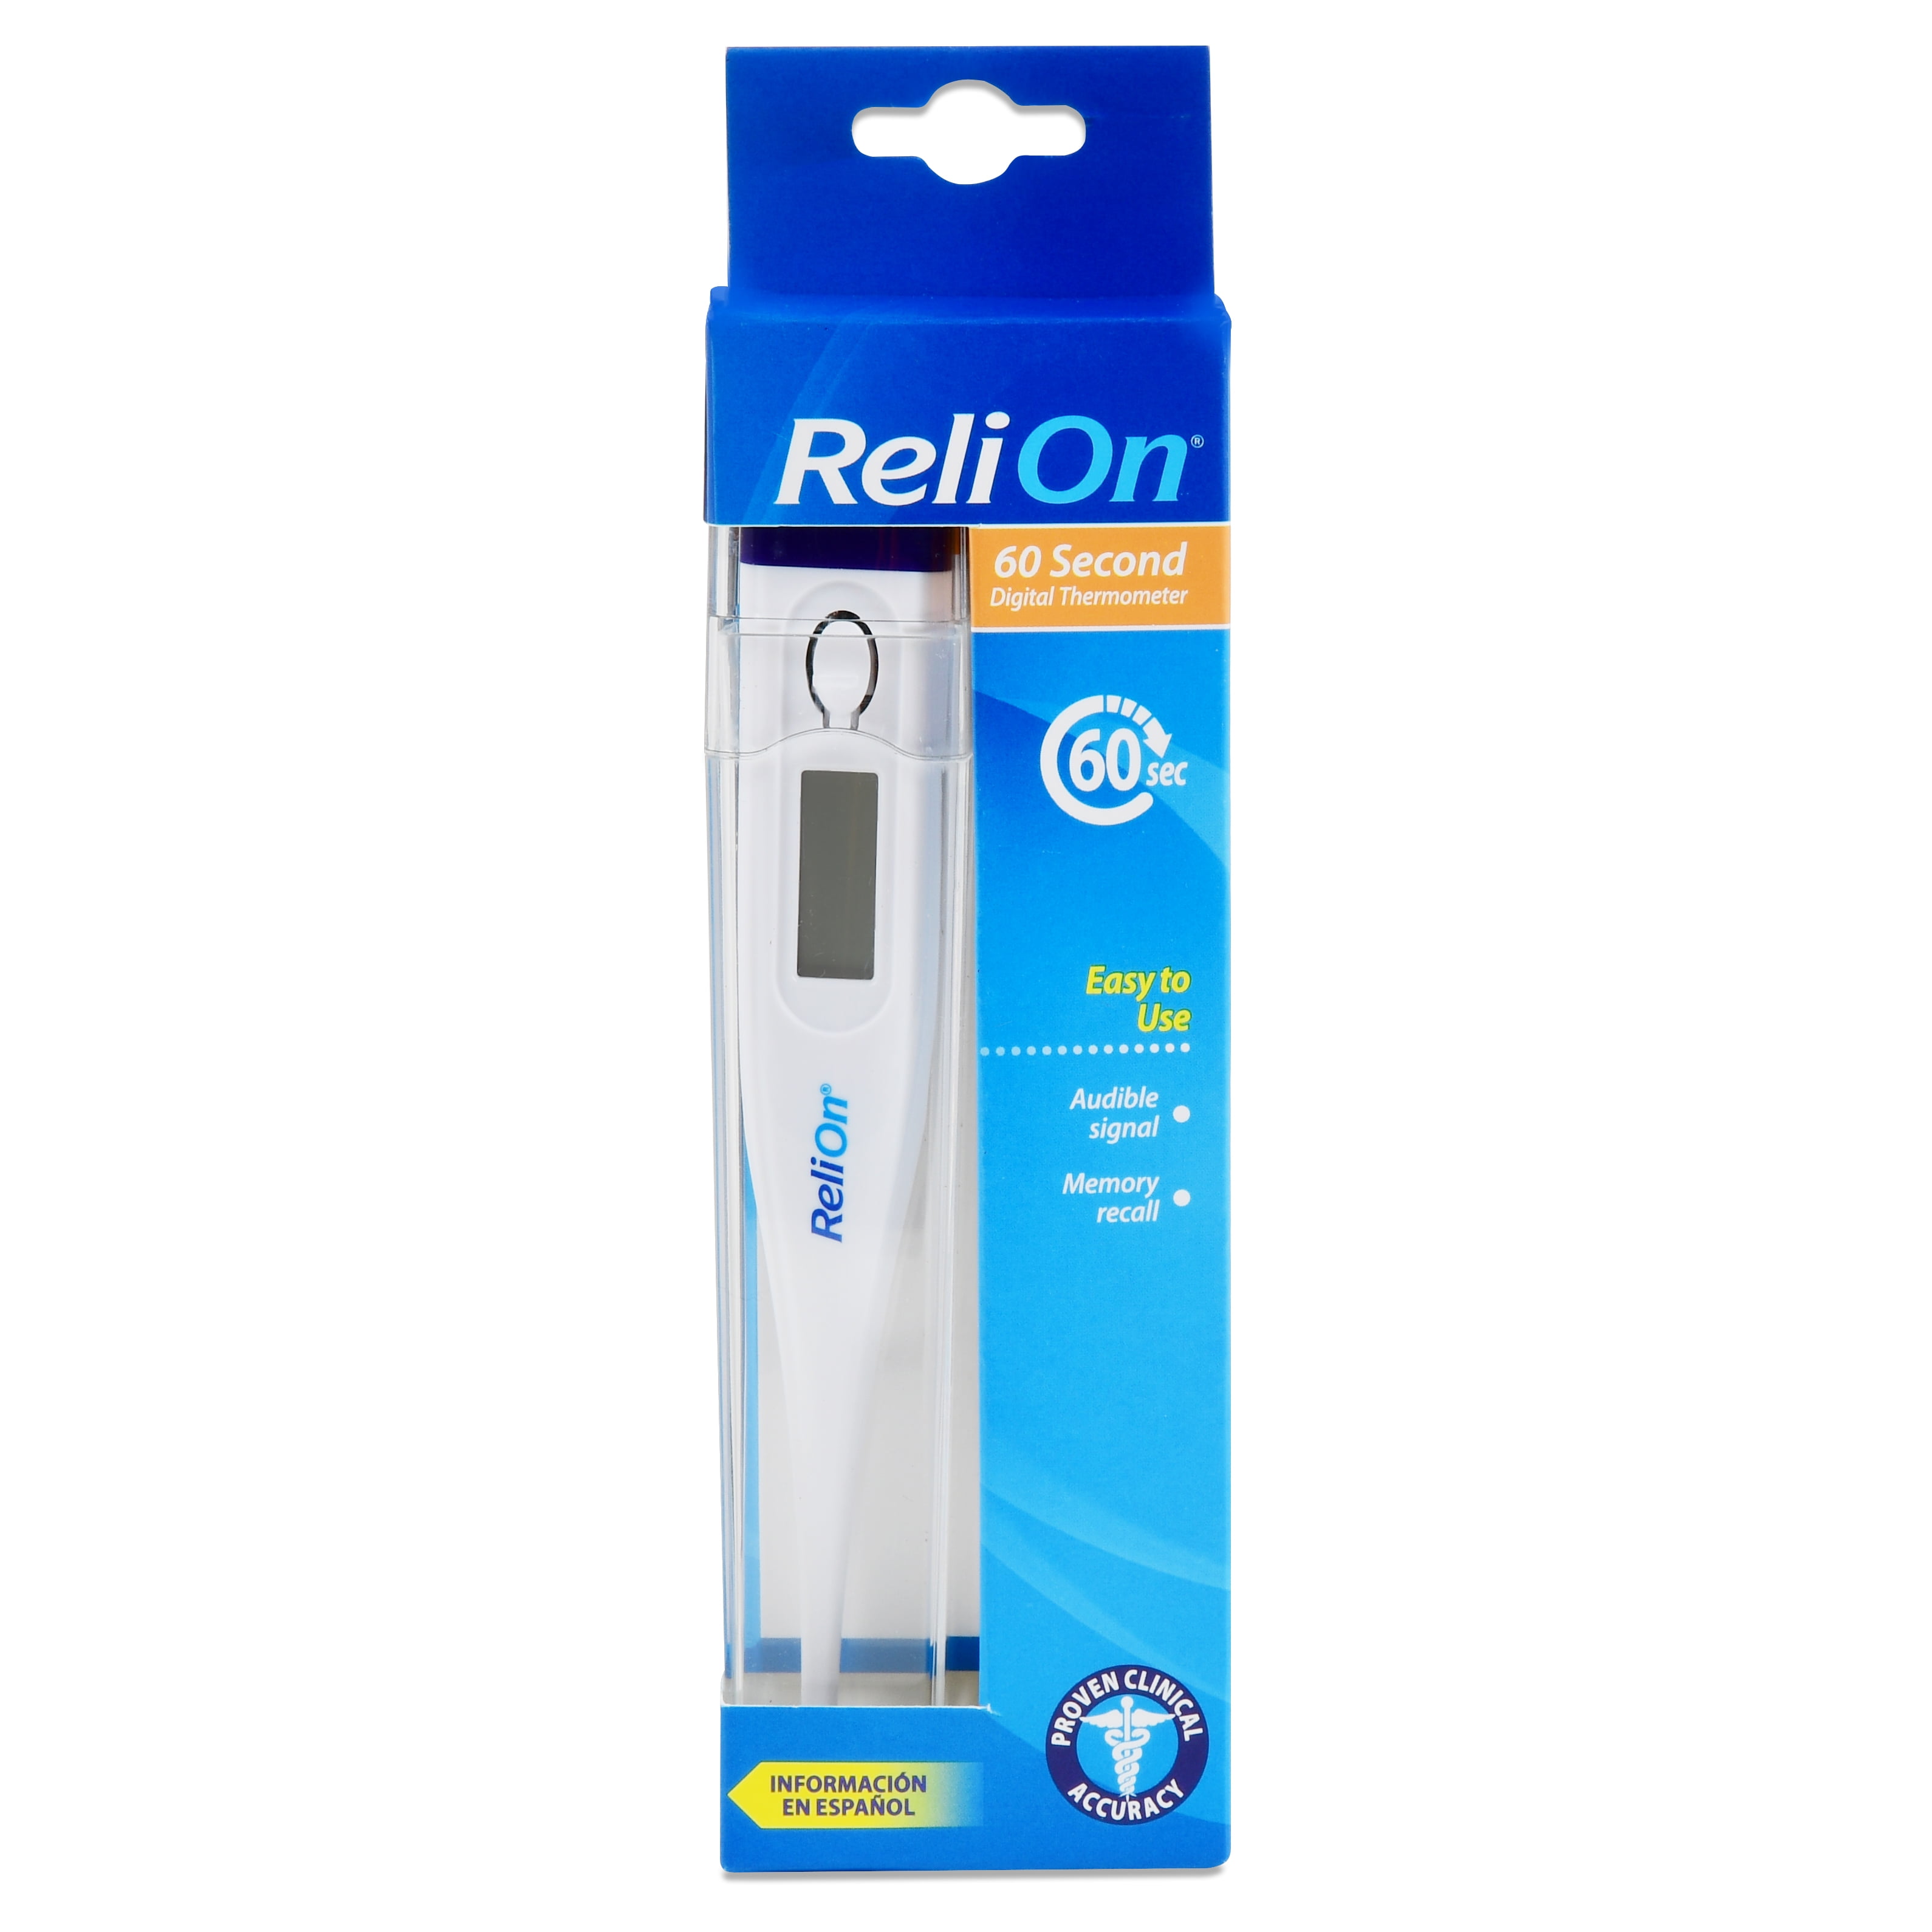 ReliOn 60 Second Digital Thermometer - Walmart.com - Walmart.com